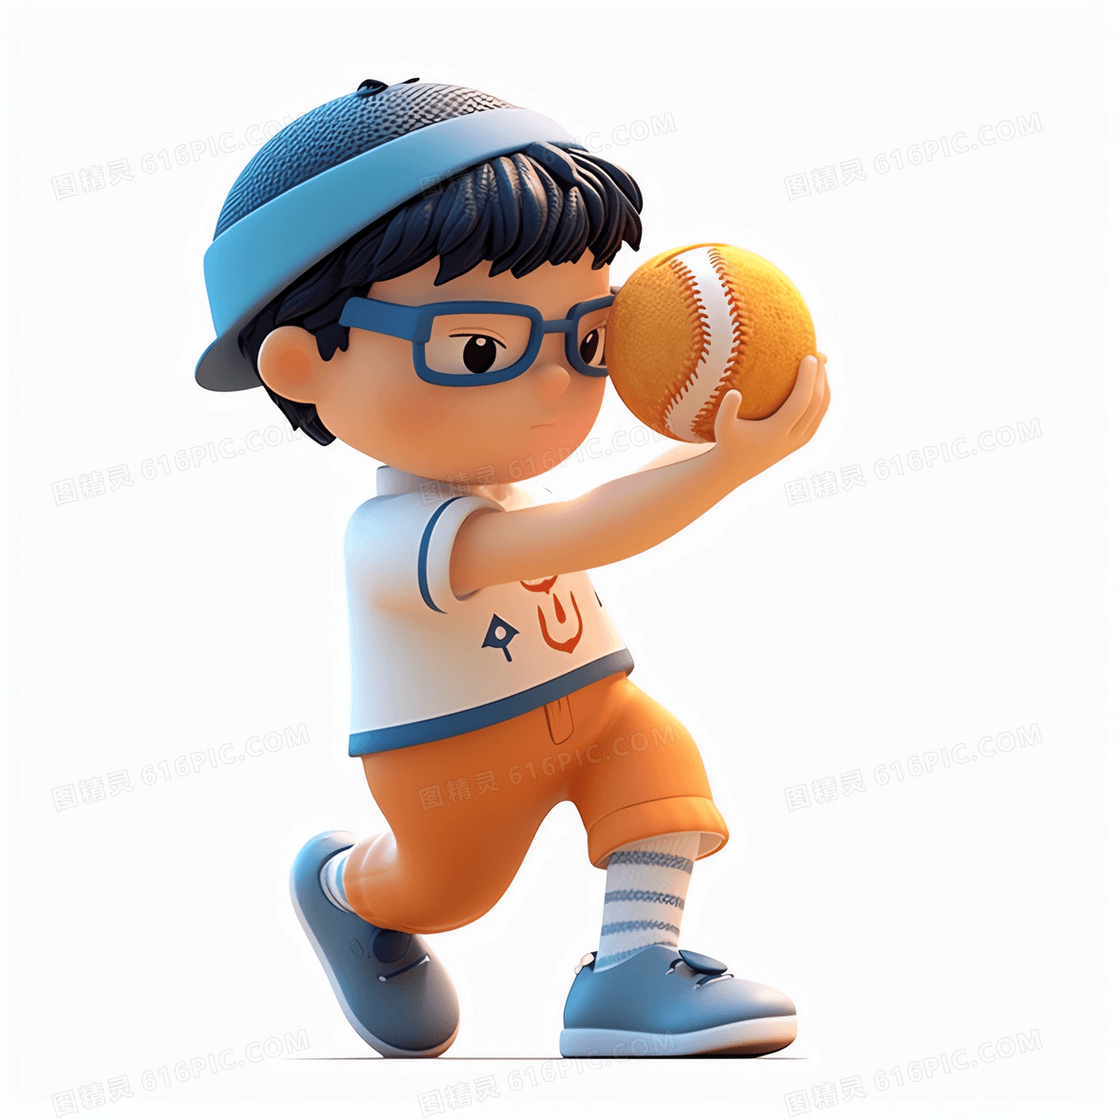 摆好投垒球动作的可爱男孩3D模型